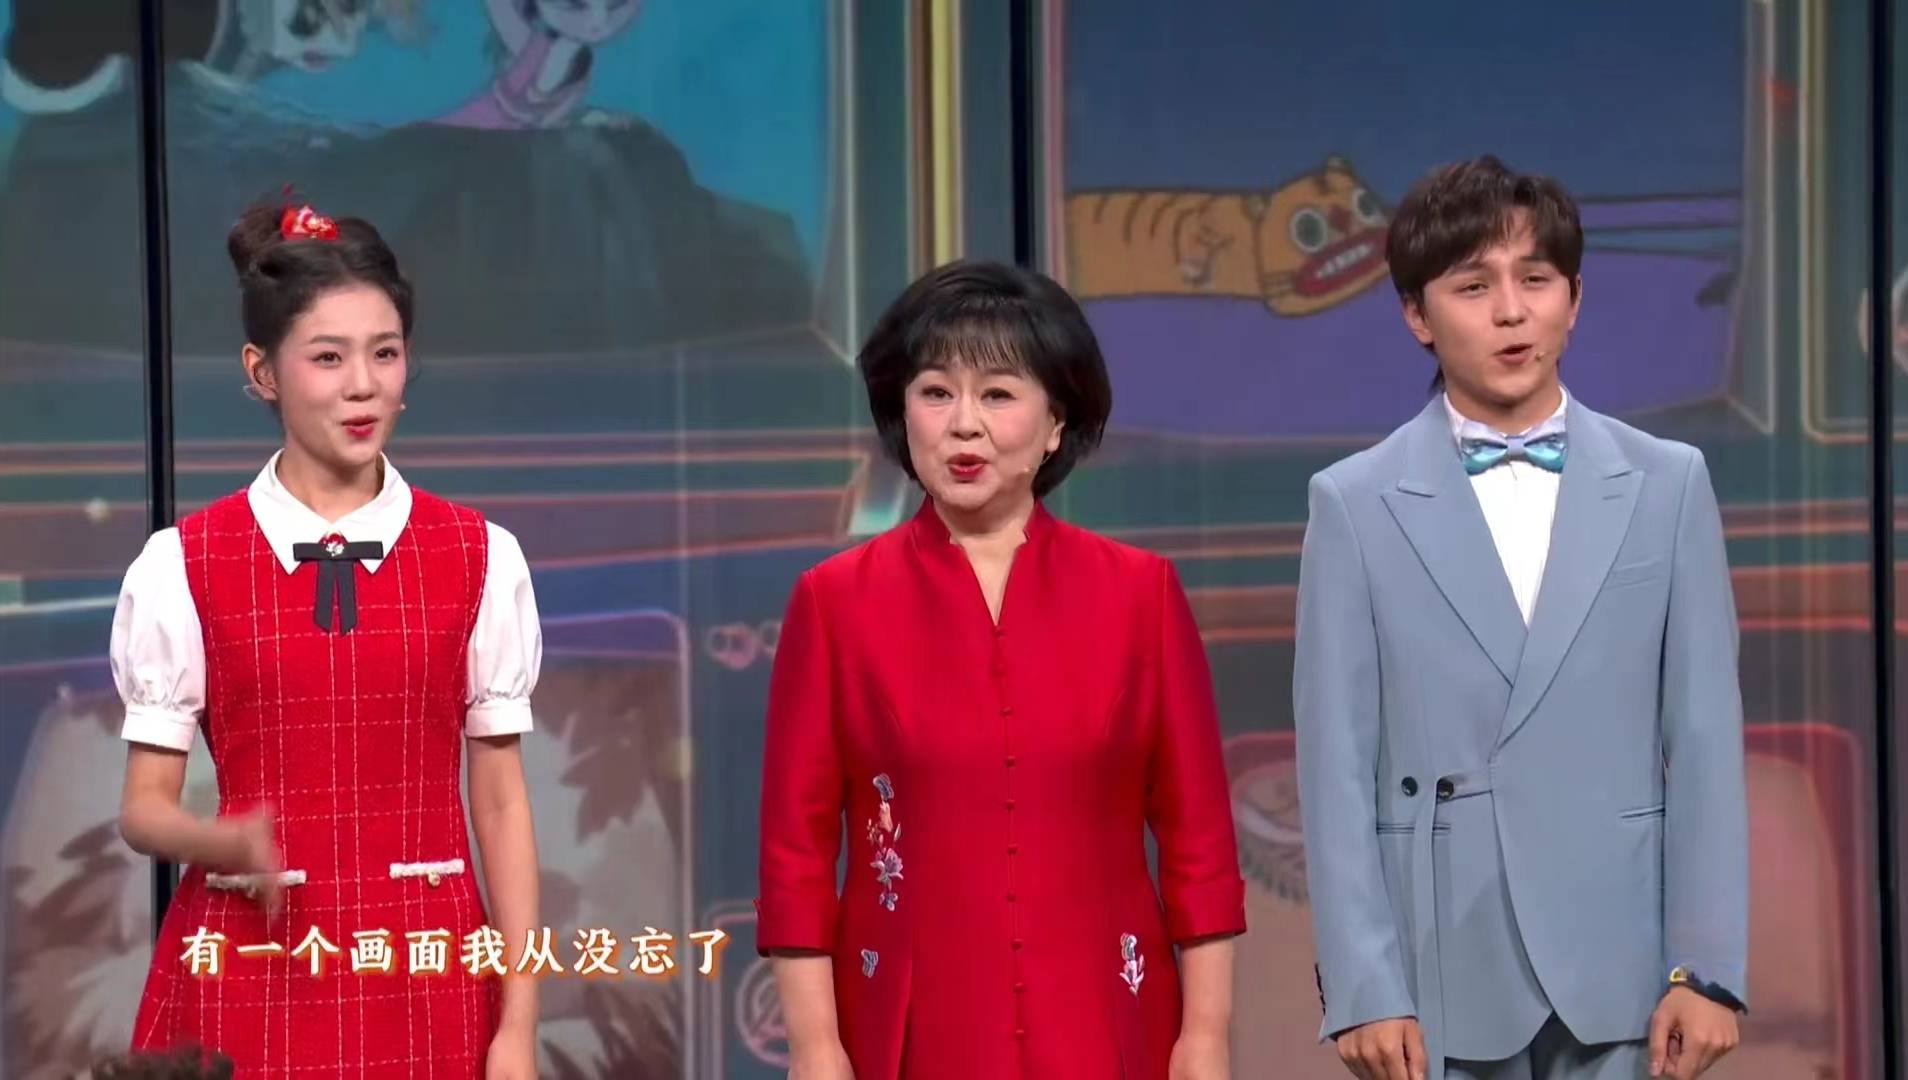 央视春晚:站在鞠萍姐姐旁边的两位主持人大赛选手,大家认出来了吗?